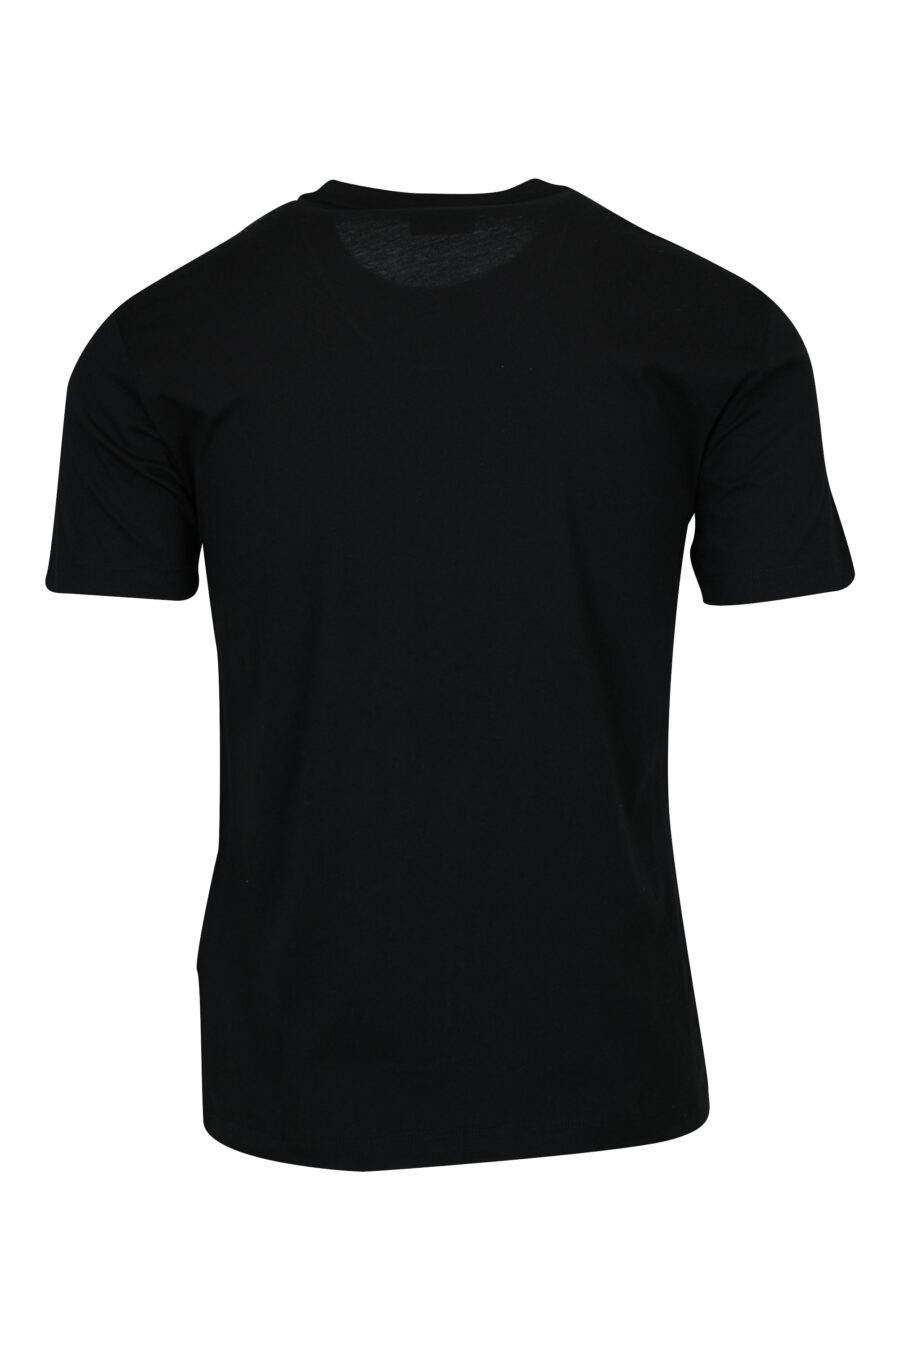 T-shirt preta com maxilogo "lux identity" em degradé - 8058947508099 1